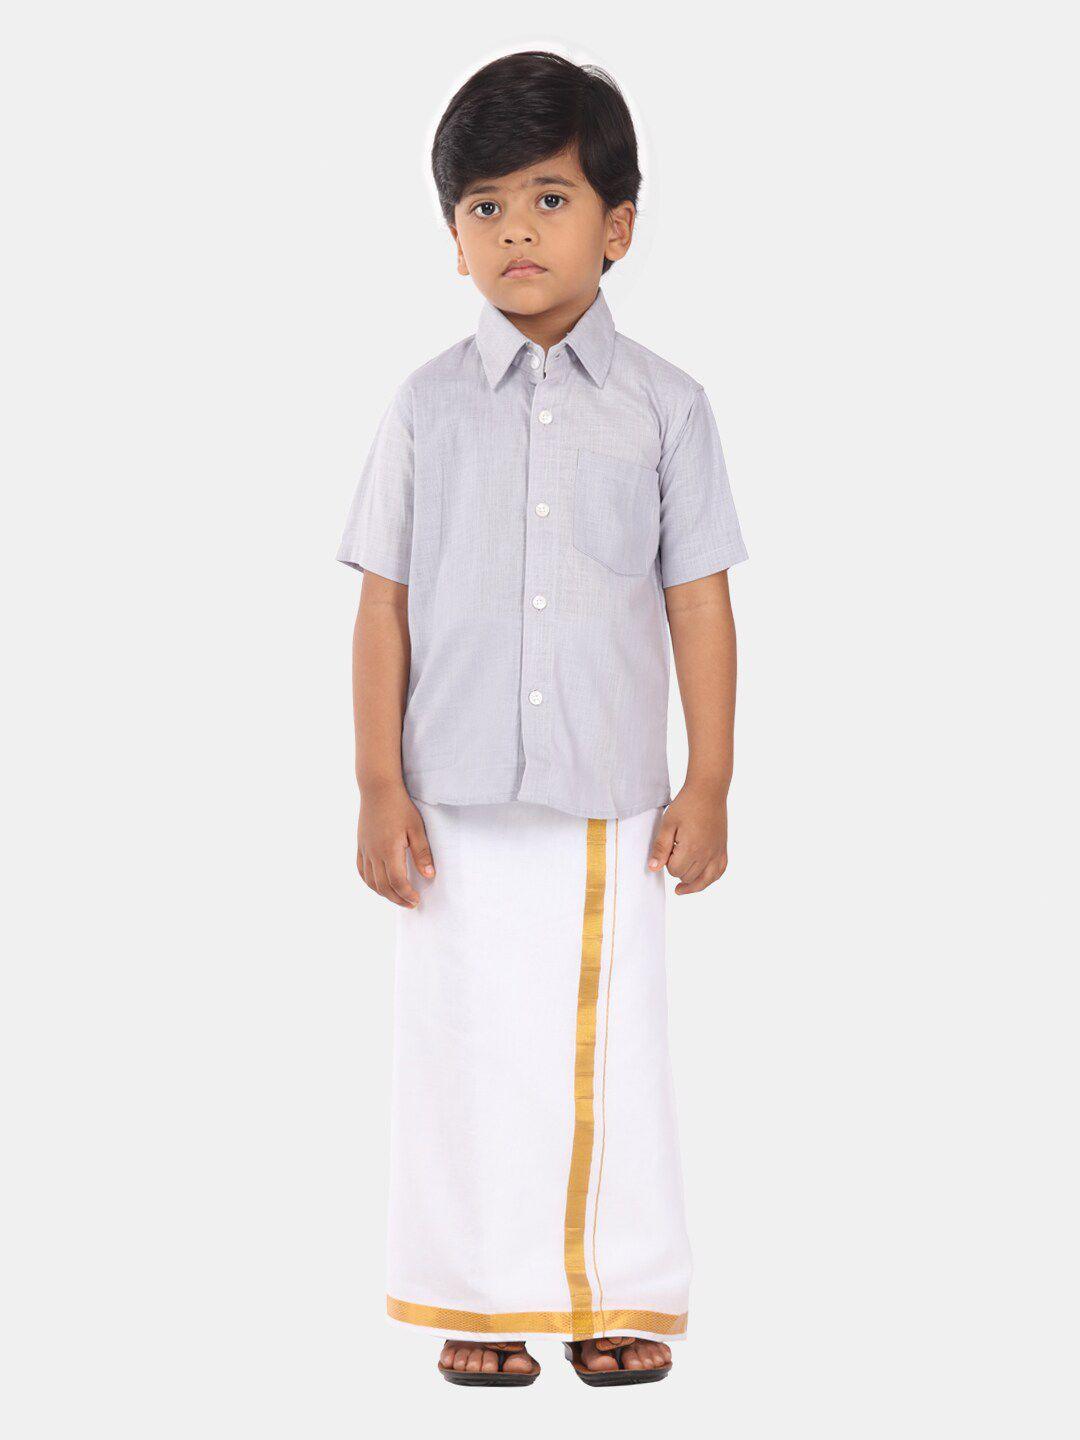 sethukrishna-boys-ethnic-pure-cotton-shirt-and-veshti-clothing-set